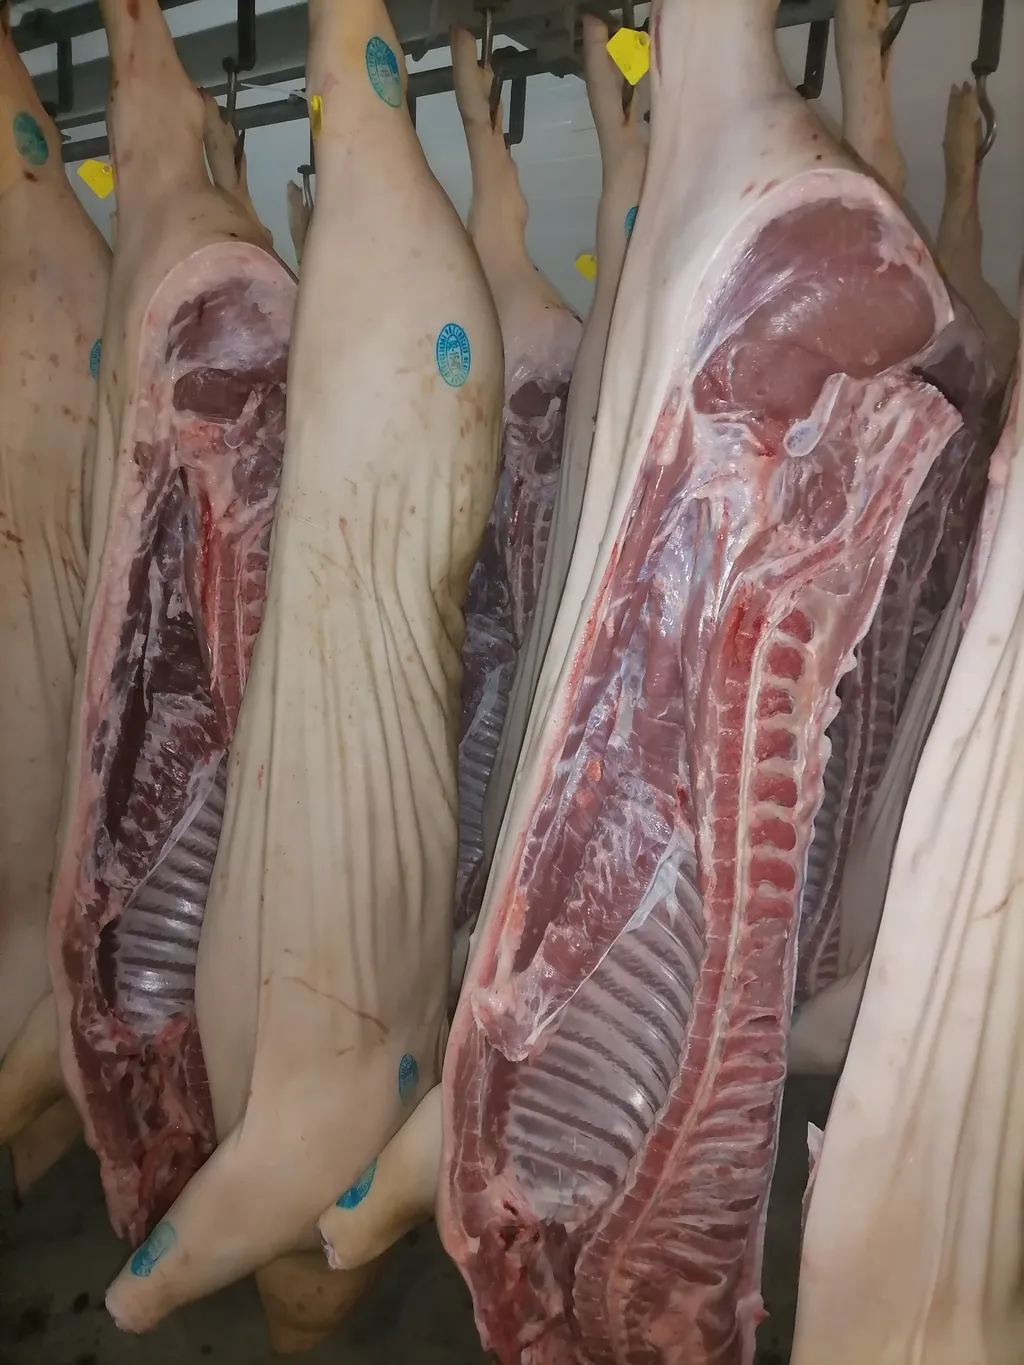 фотография продукта Мясо свинины в полутушах